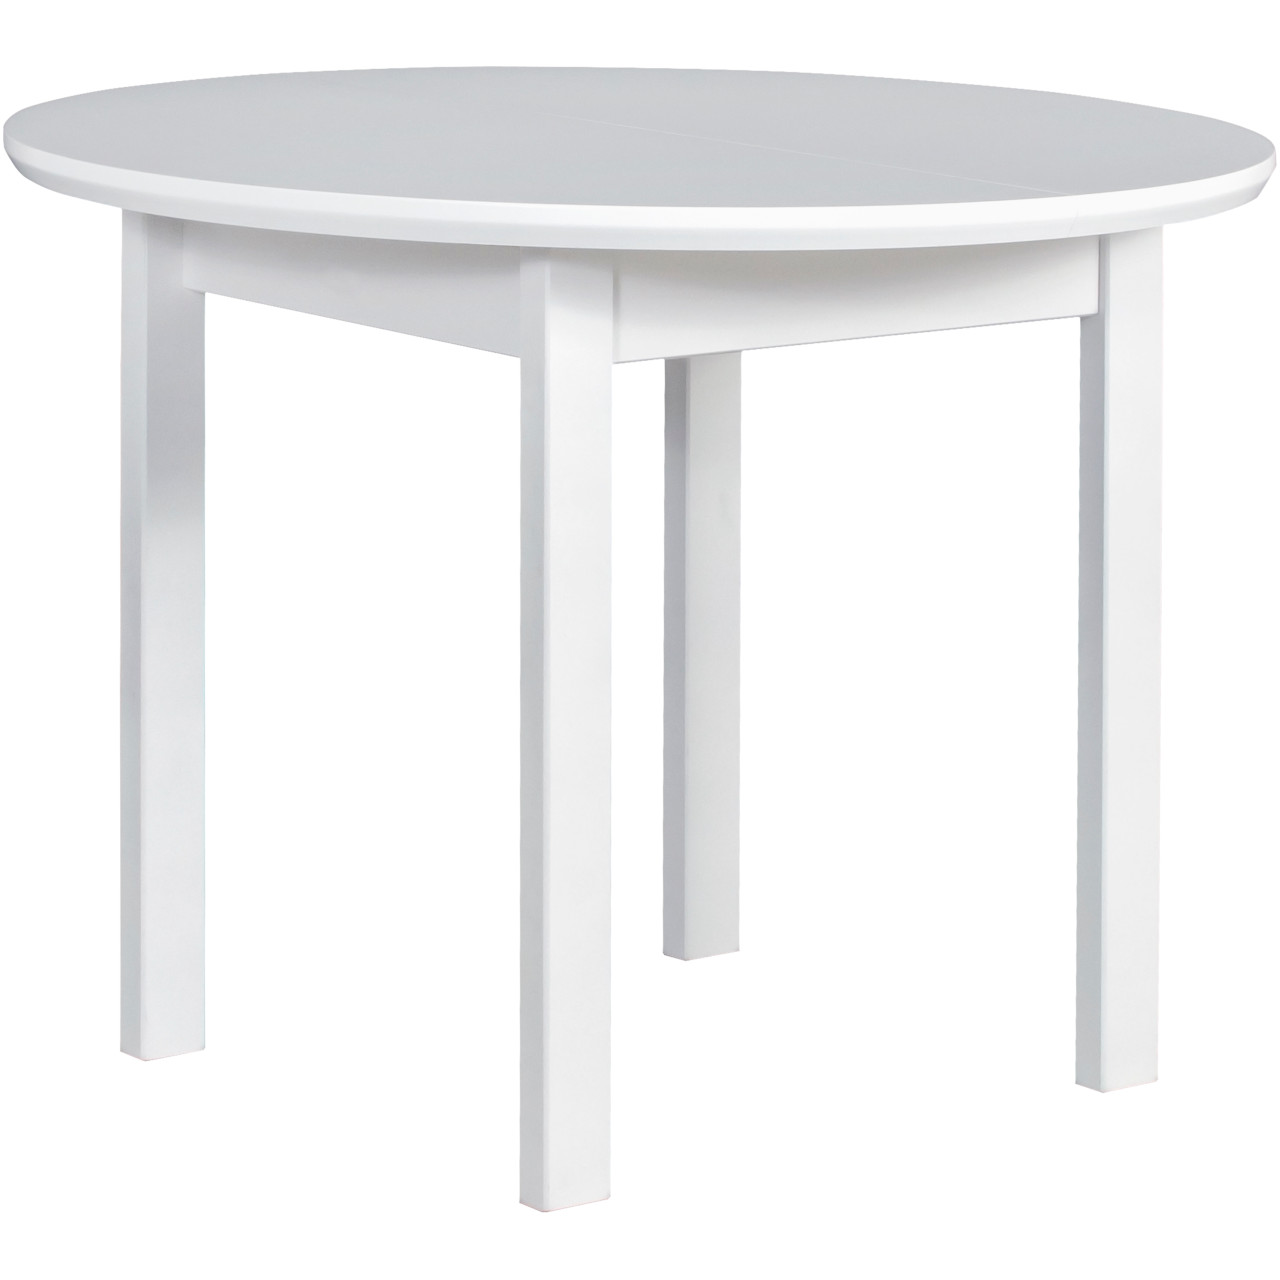 Table POLI 1 100x100/130 white MDF